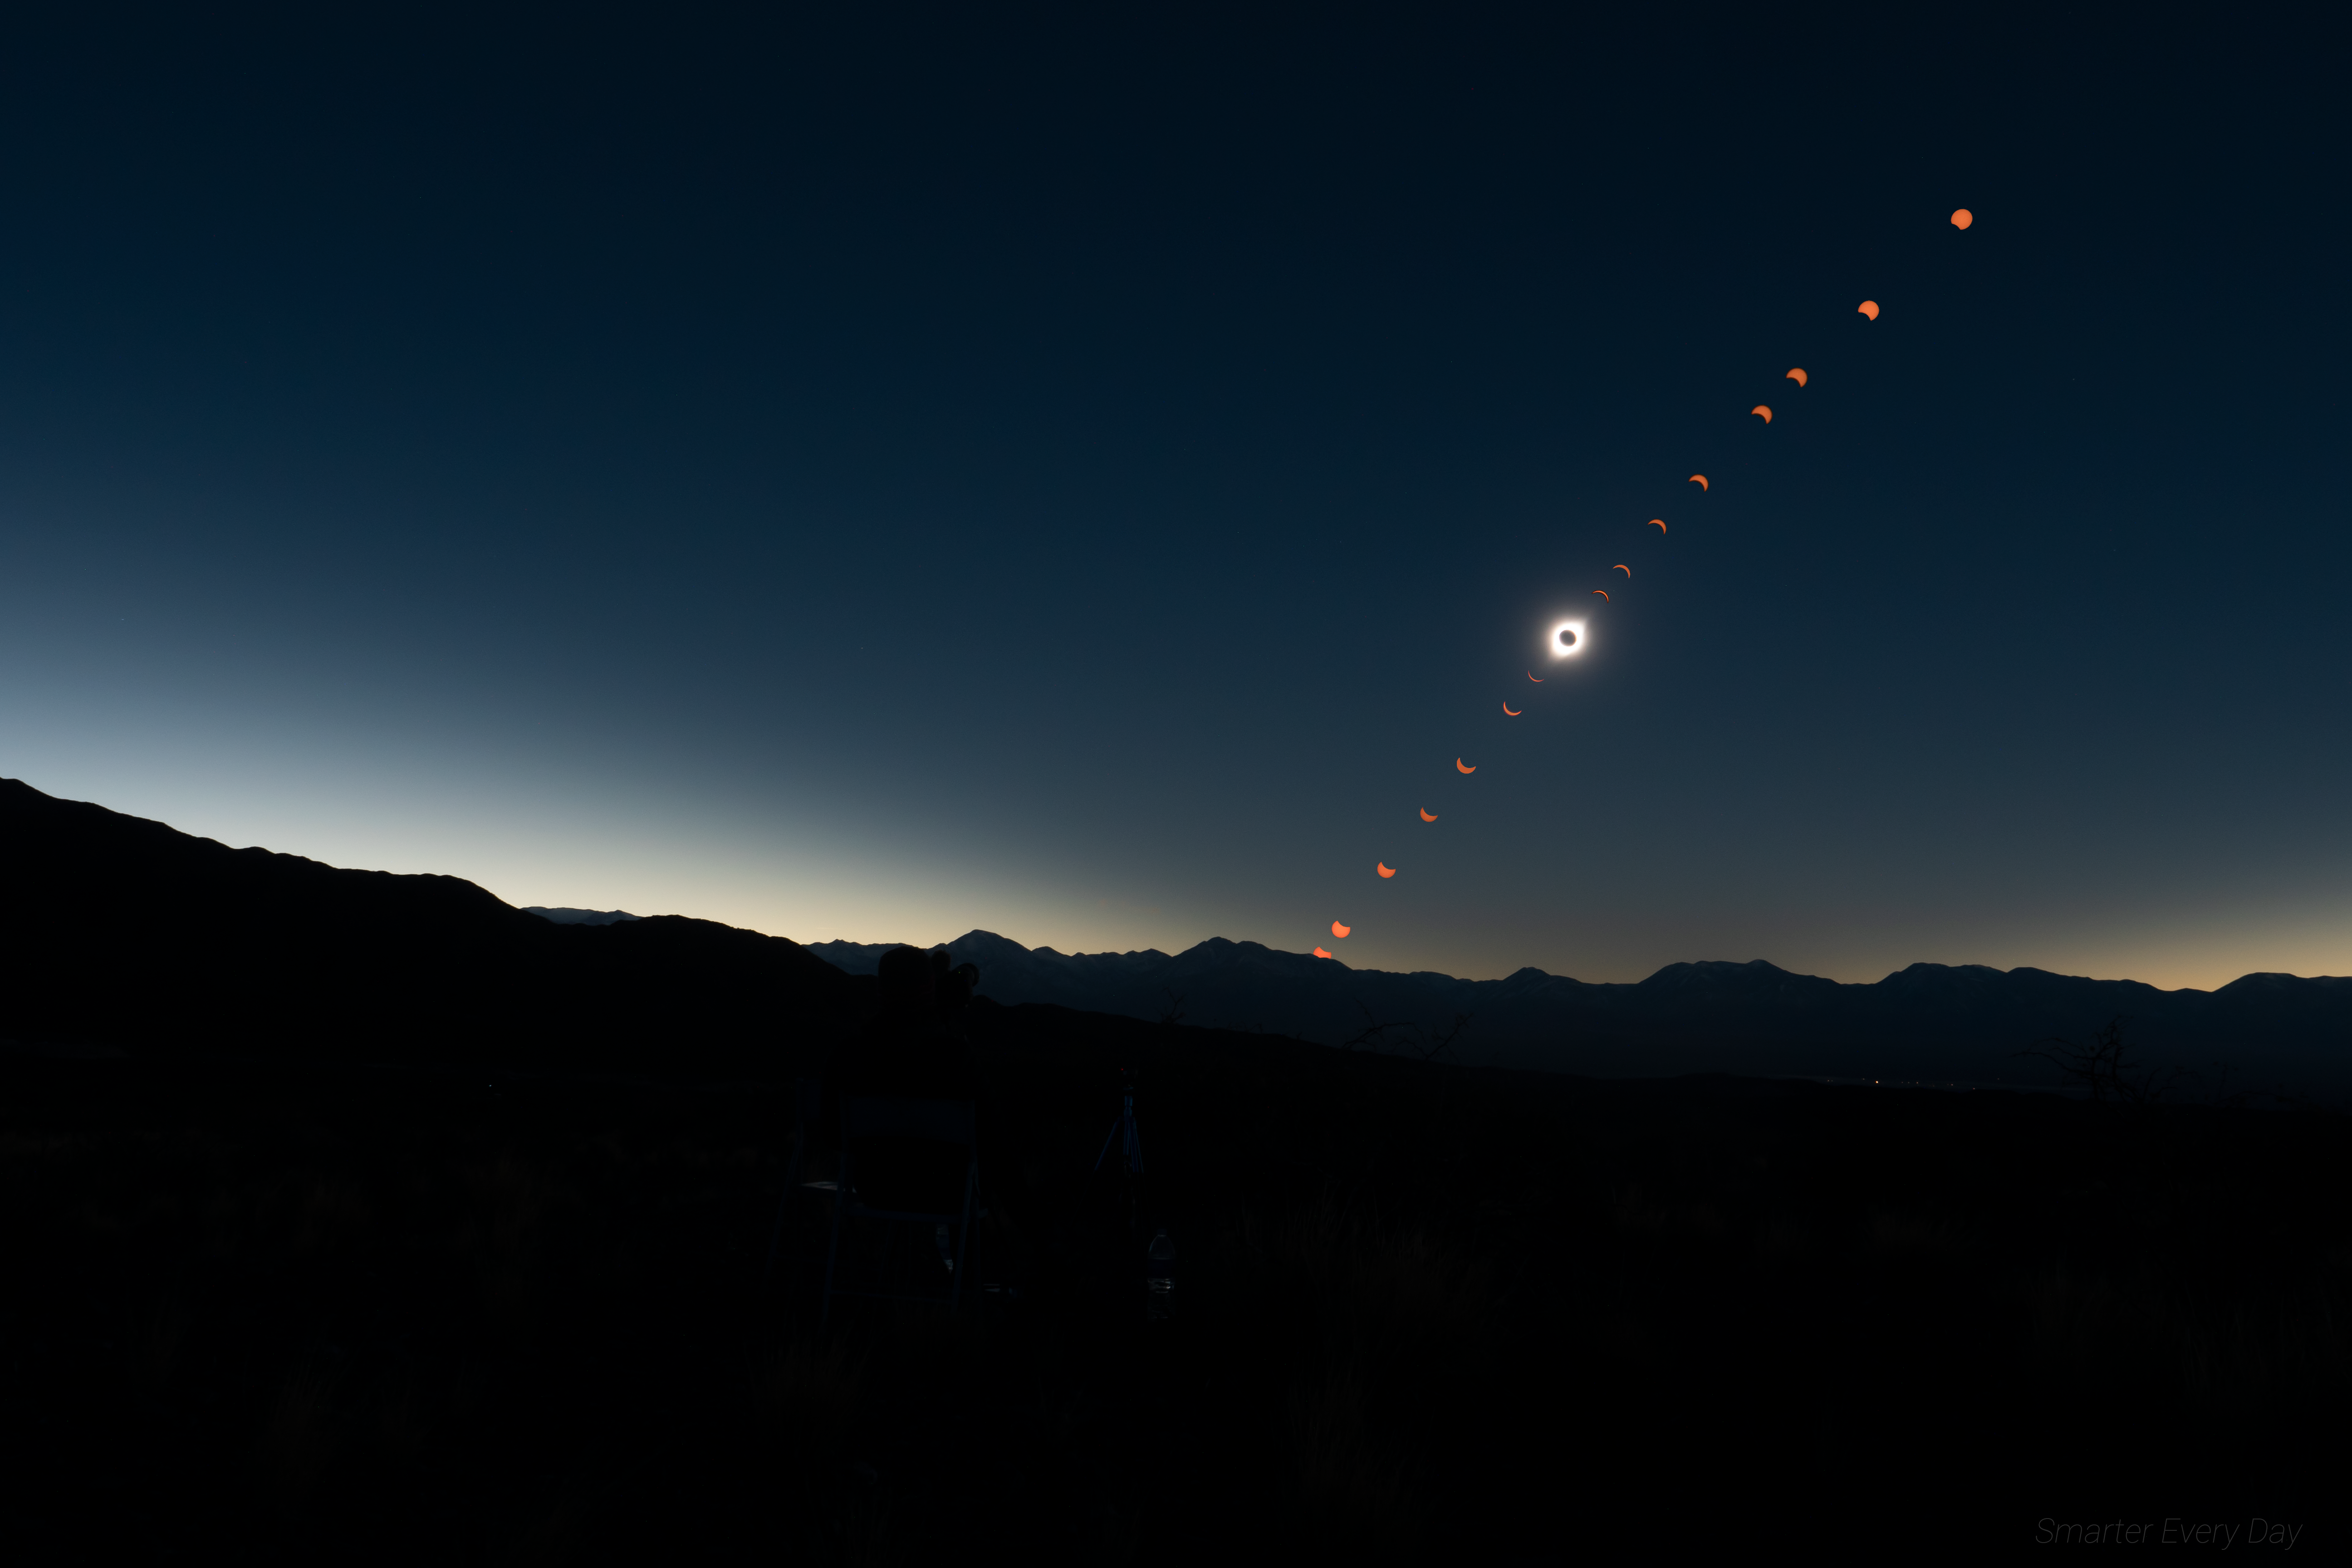 Eclipse Solar Eclipse Time Lapse 5184x3456